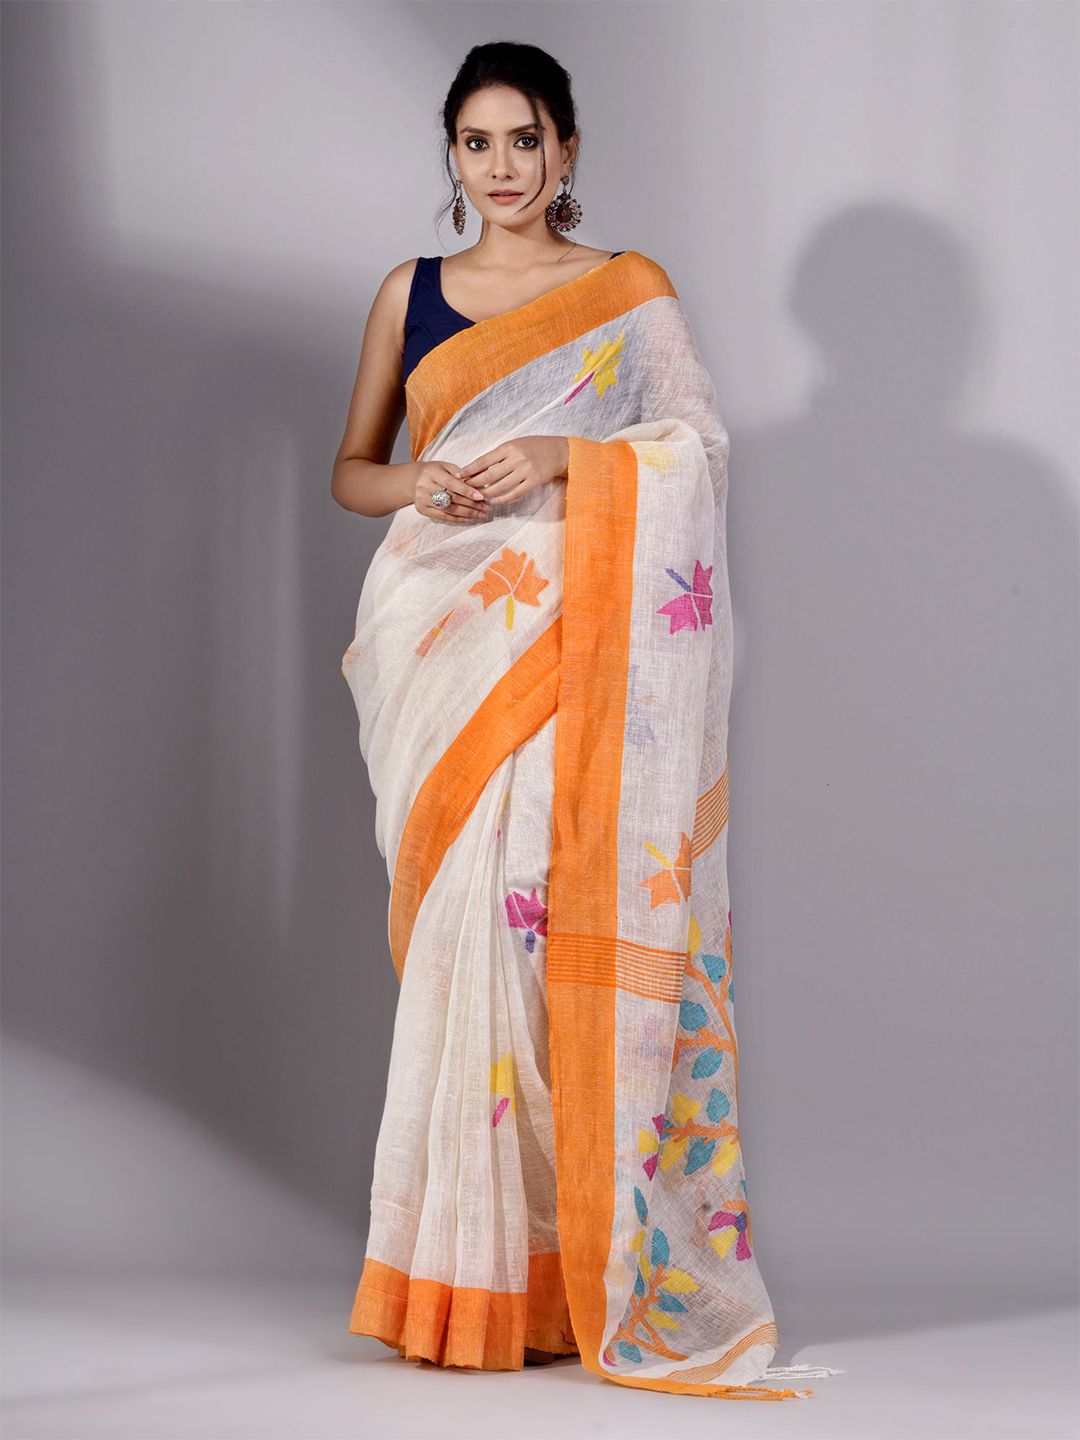 Charukriti Off White & Orange Woven Design Pure Linen Saree Price in India